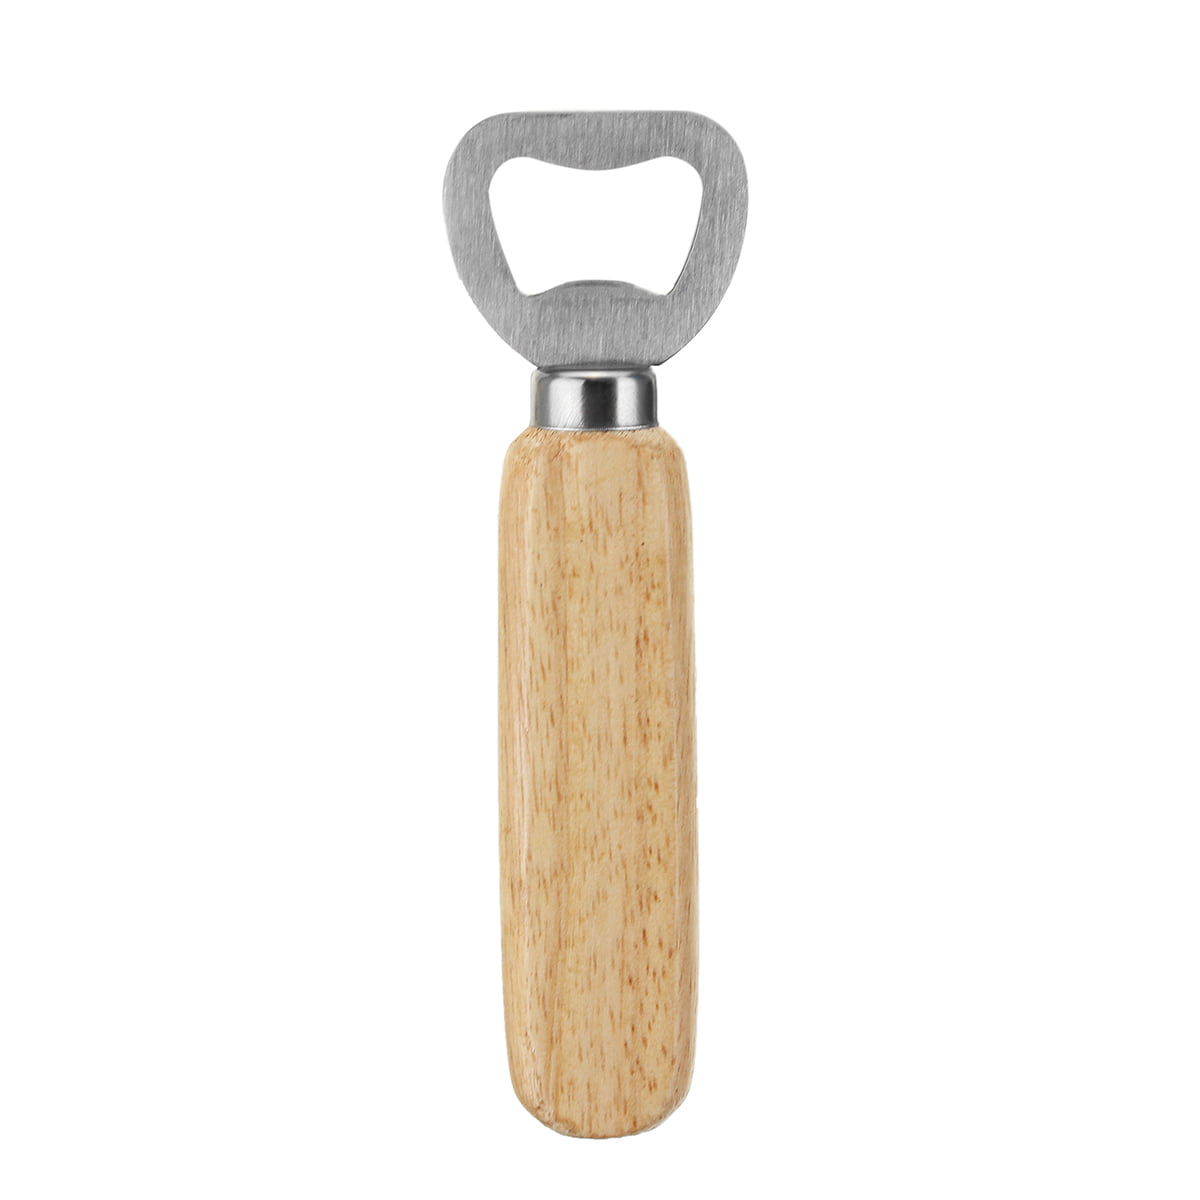 Keychain Opener Bottle Opener Wood Wine Kitchen Beer Steel Creative Opener LI 